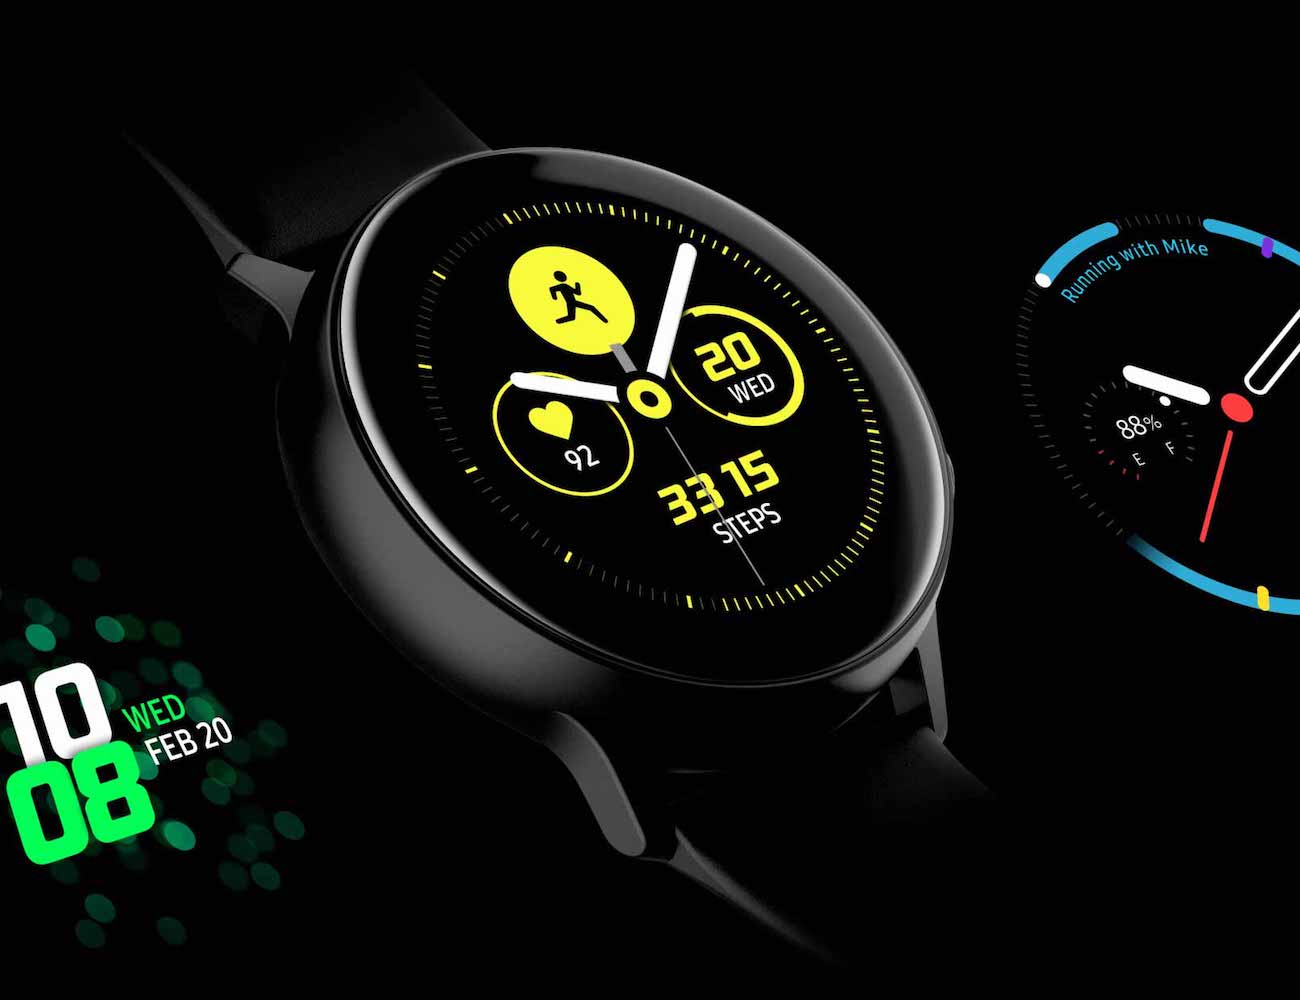 שעון חכם Samsung Galaxy Watch Active - יתרונות וחסרונות